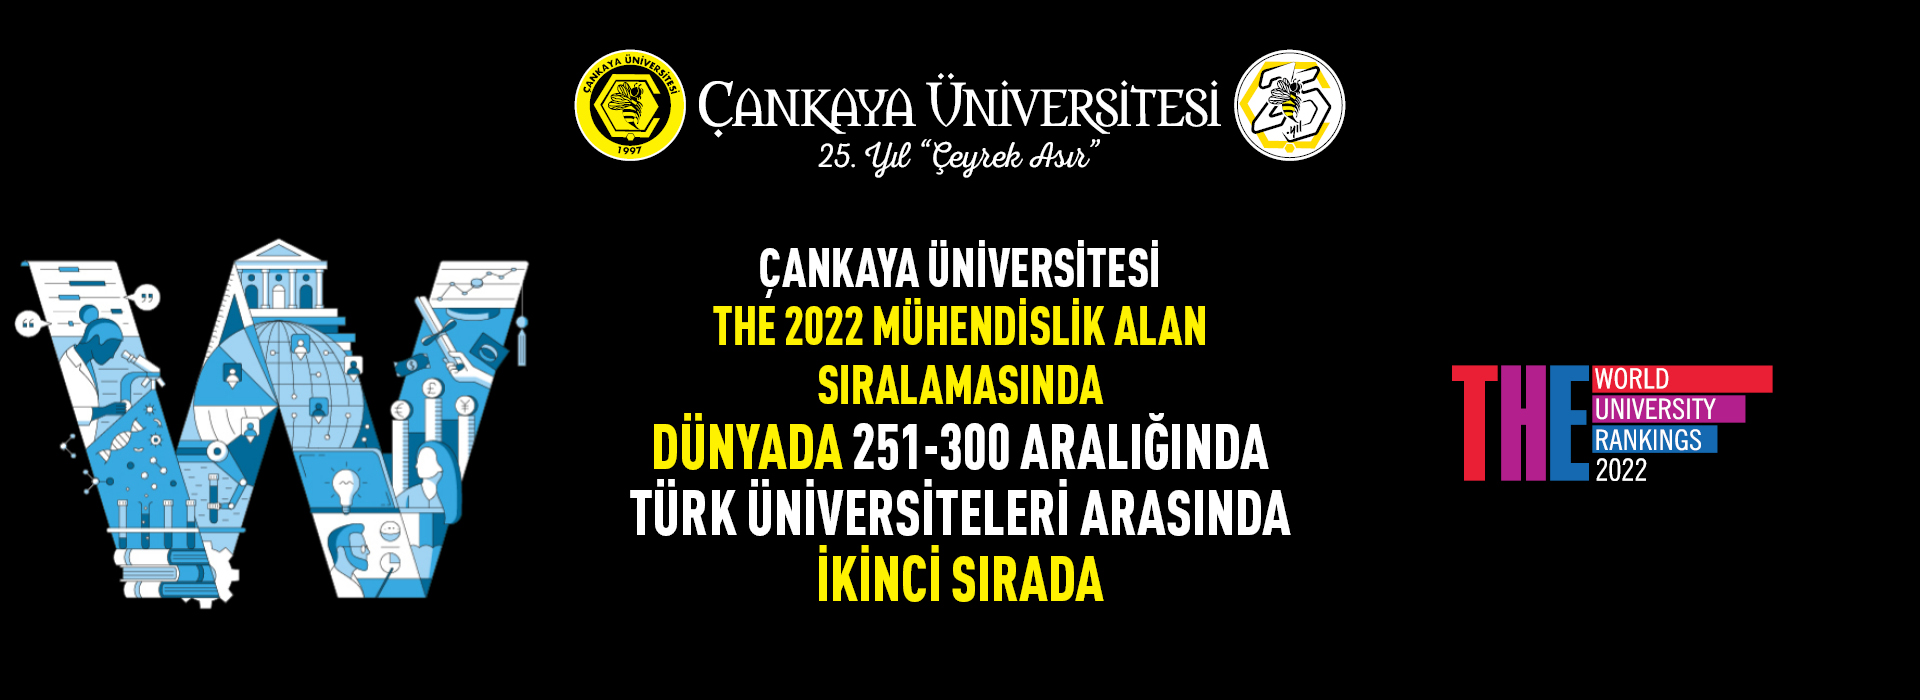 Çankaya Üniversitesi The 2022 Mühendislik Sıralamasında Dünyada 251-300 aralığında Türk Üniversiteleri Arasında İkinci Sırada